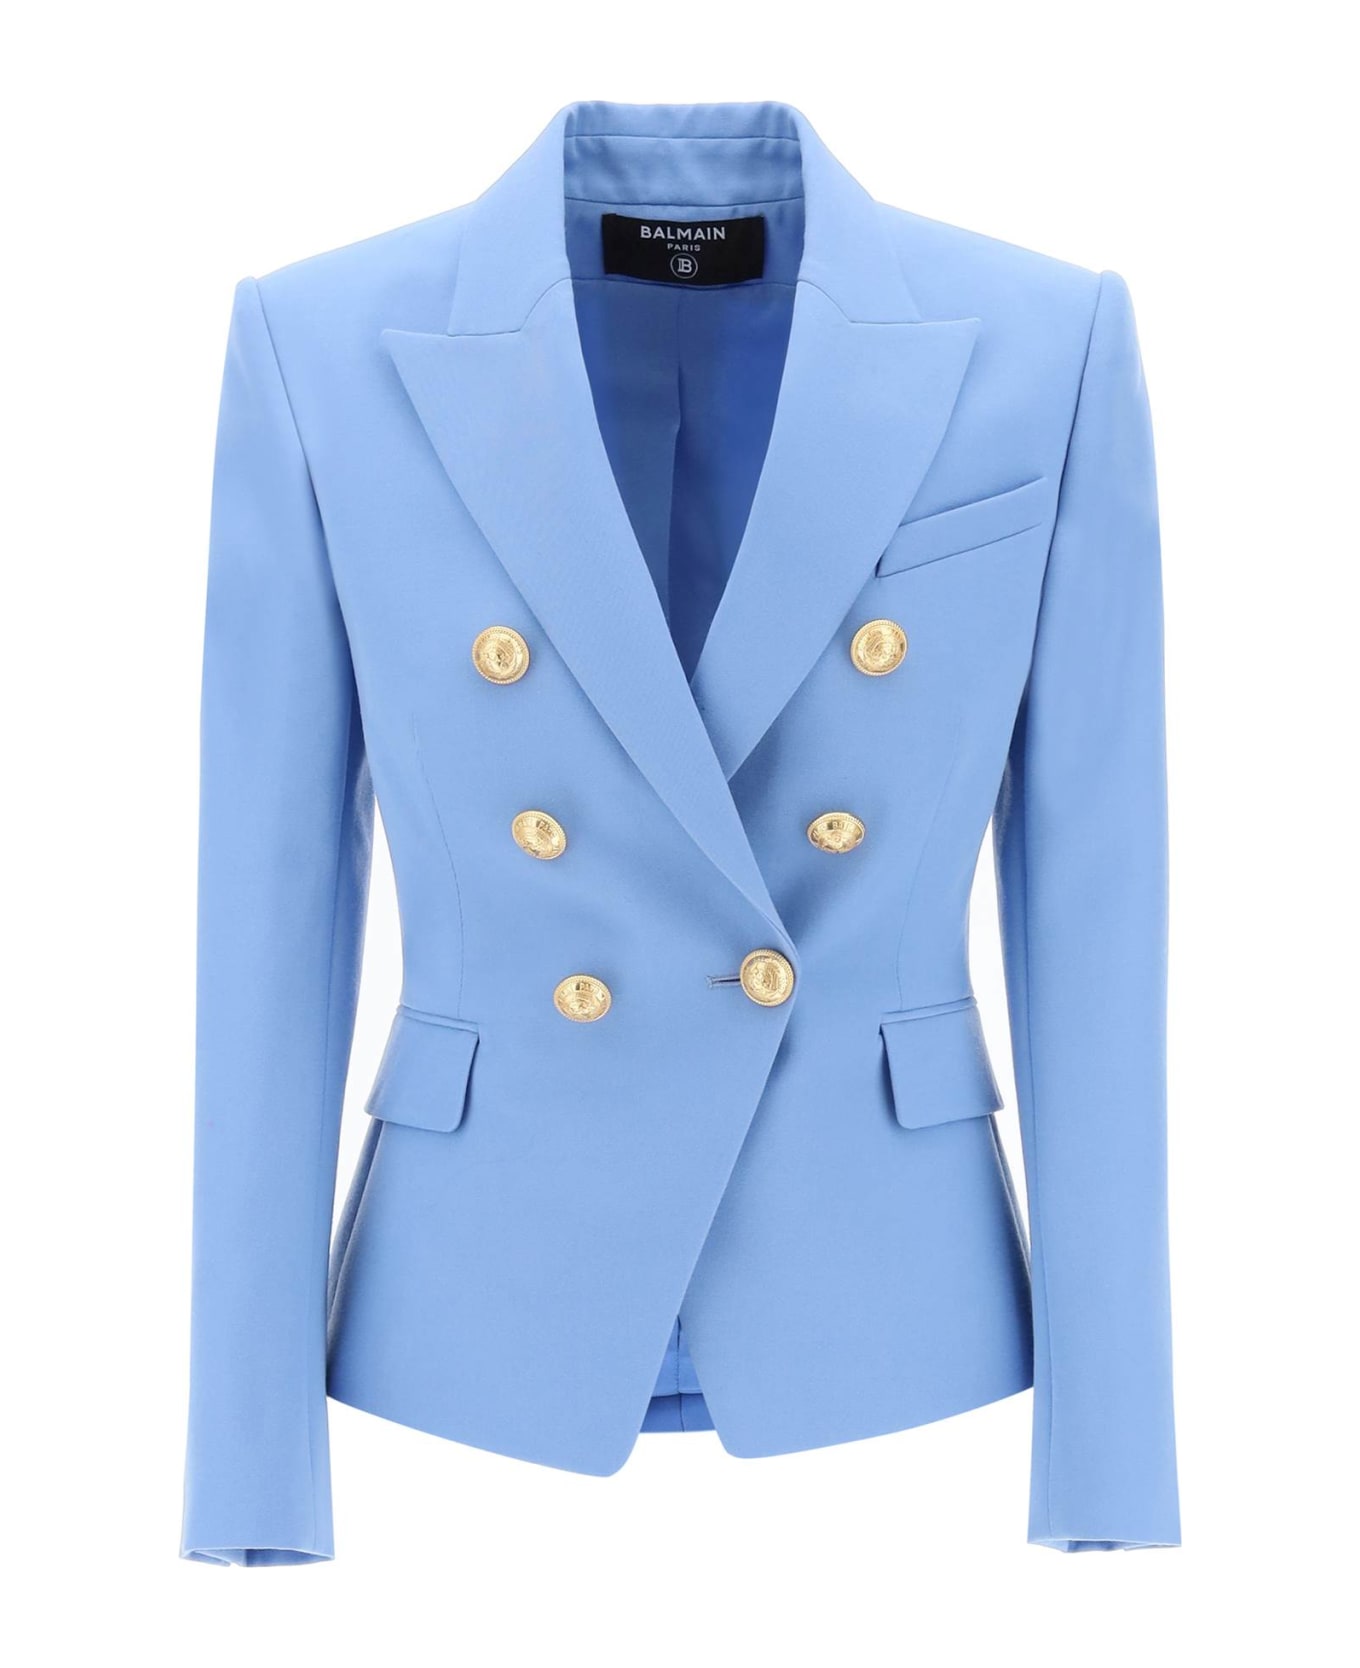 Balmain Double-breasted Jacket - BLEU CIEL (Light blue) ブレザー